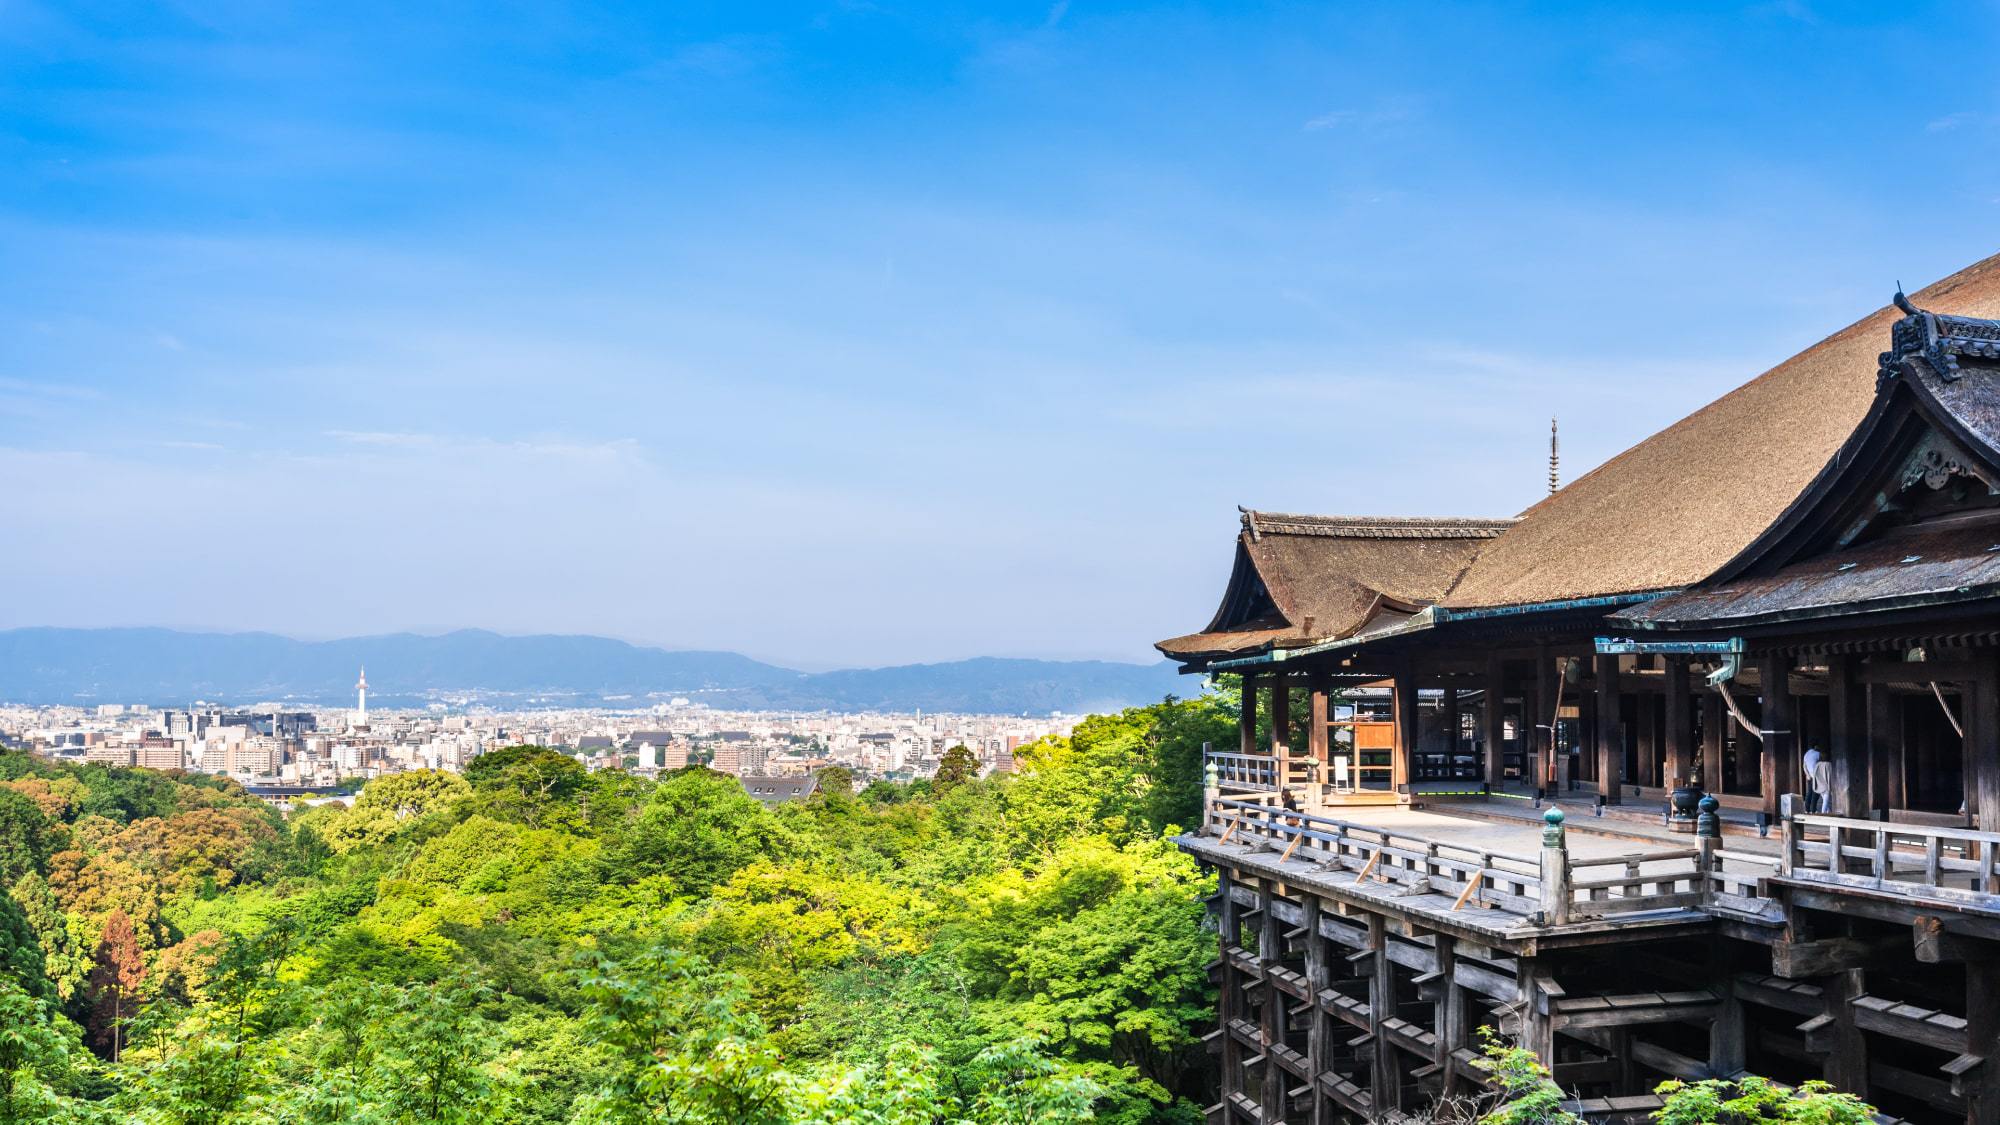 世界遺産【清水寺】「清水の舞台」のことわざで有名で、京都観光に欠かせないお寺です。